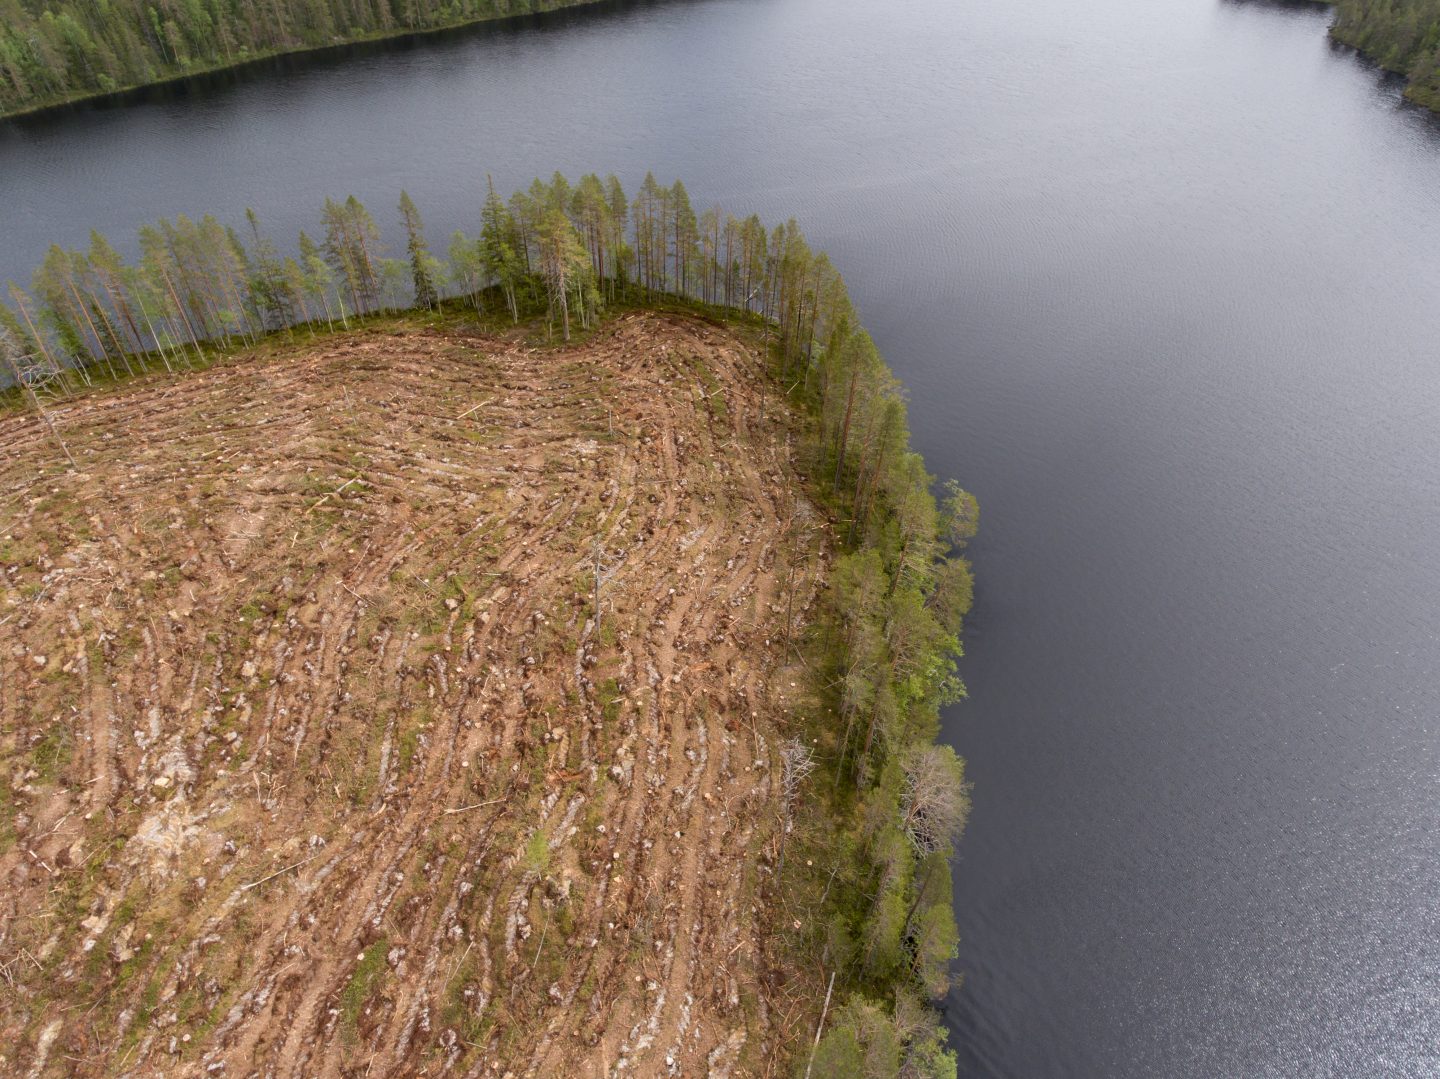 Metsähallituksen avohakkuu ulottuu aivan järven rantaan saakka. Kuvattu kesäkuussa Honkanen-järvellä. Kuva: Petri Sipilä / Greenpeace